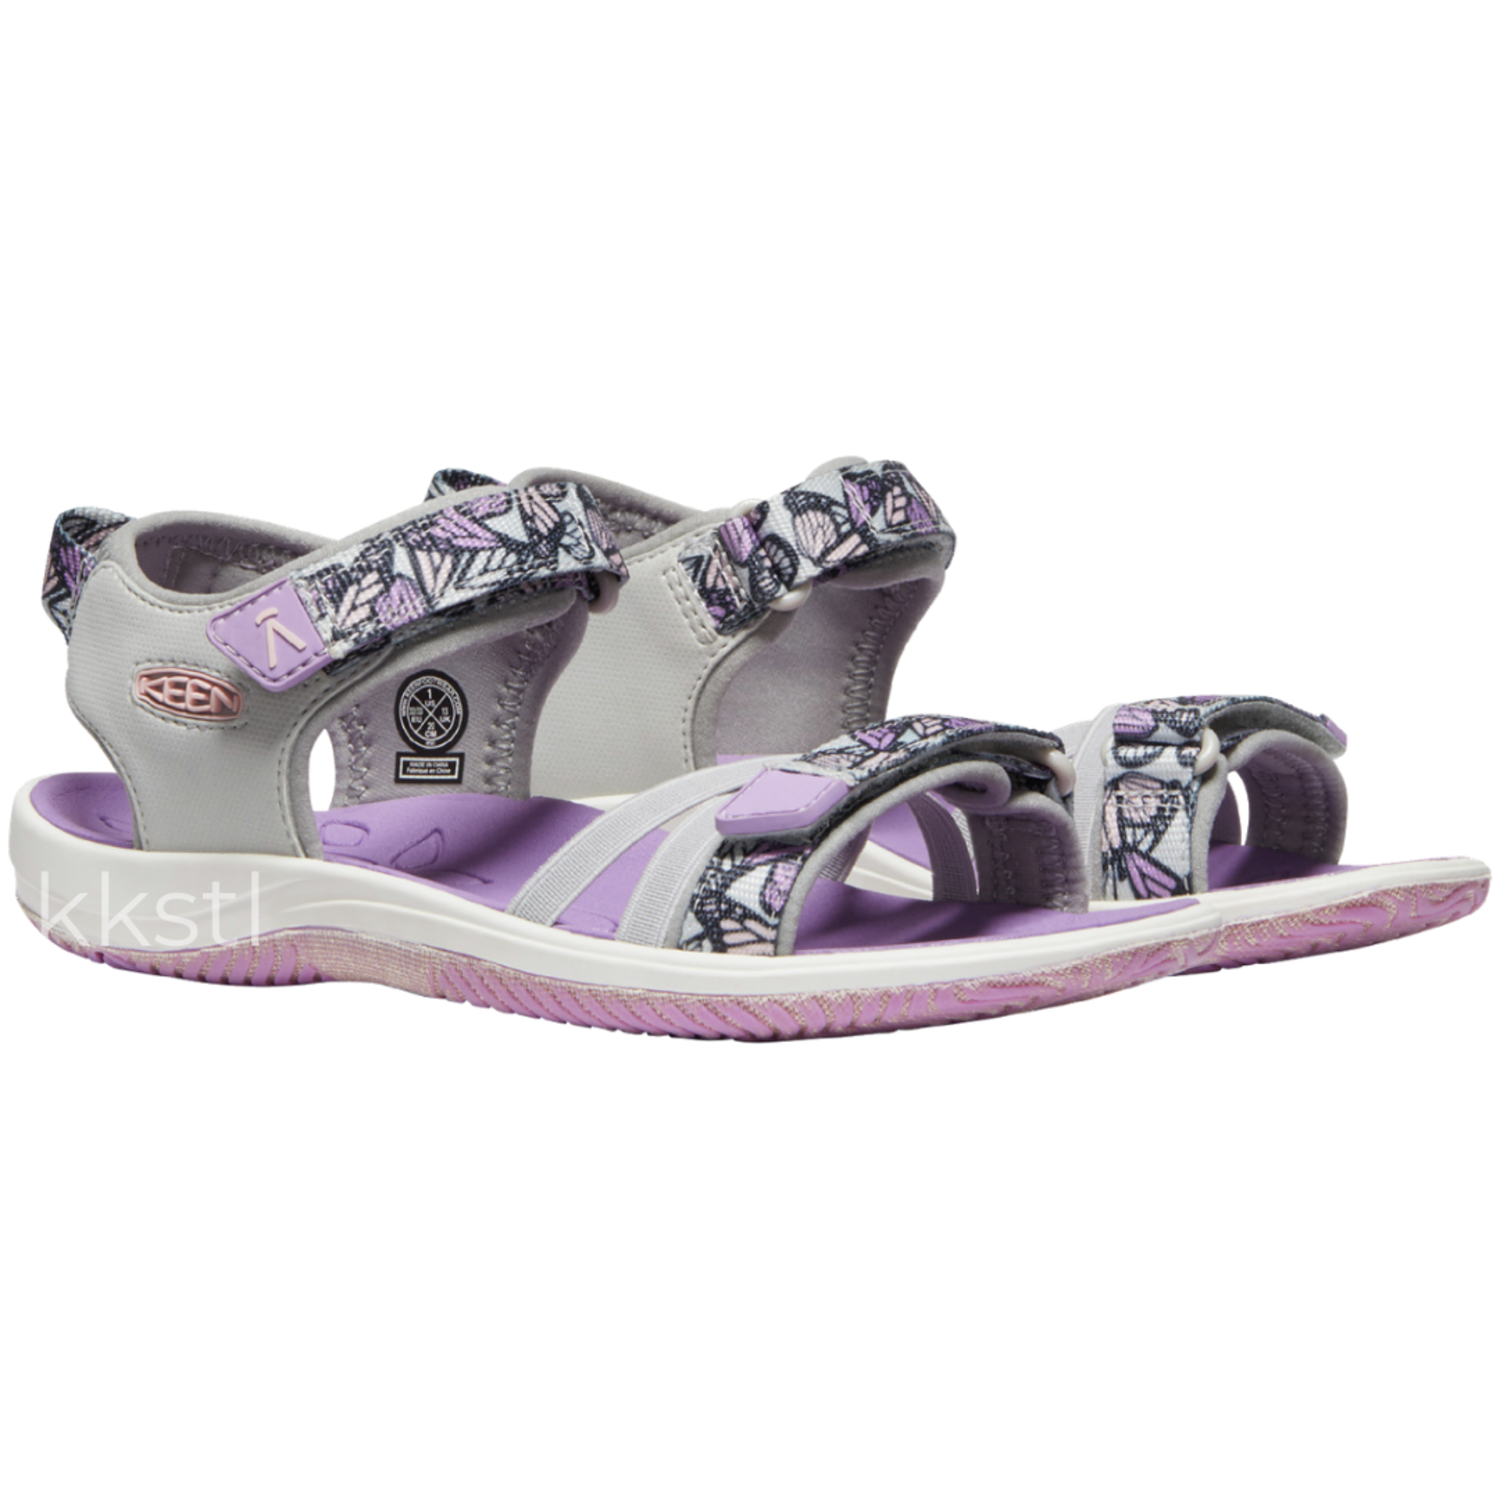 Keen Verano Vapor/African Violet - Kids Shoes in Canada - Kiddie 